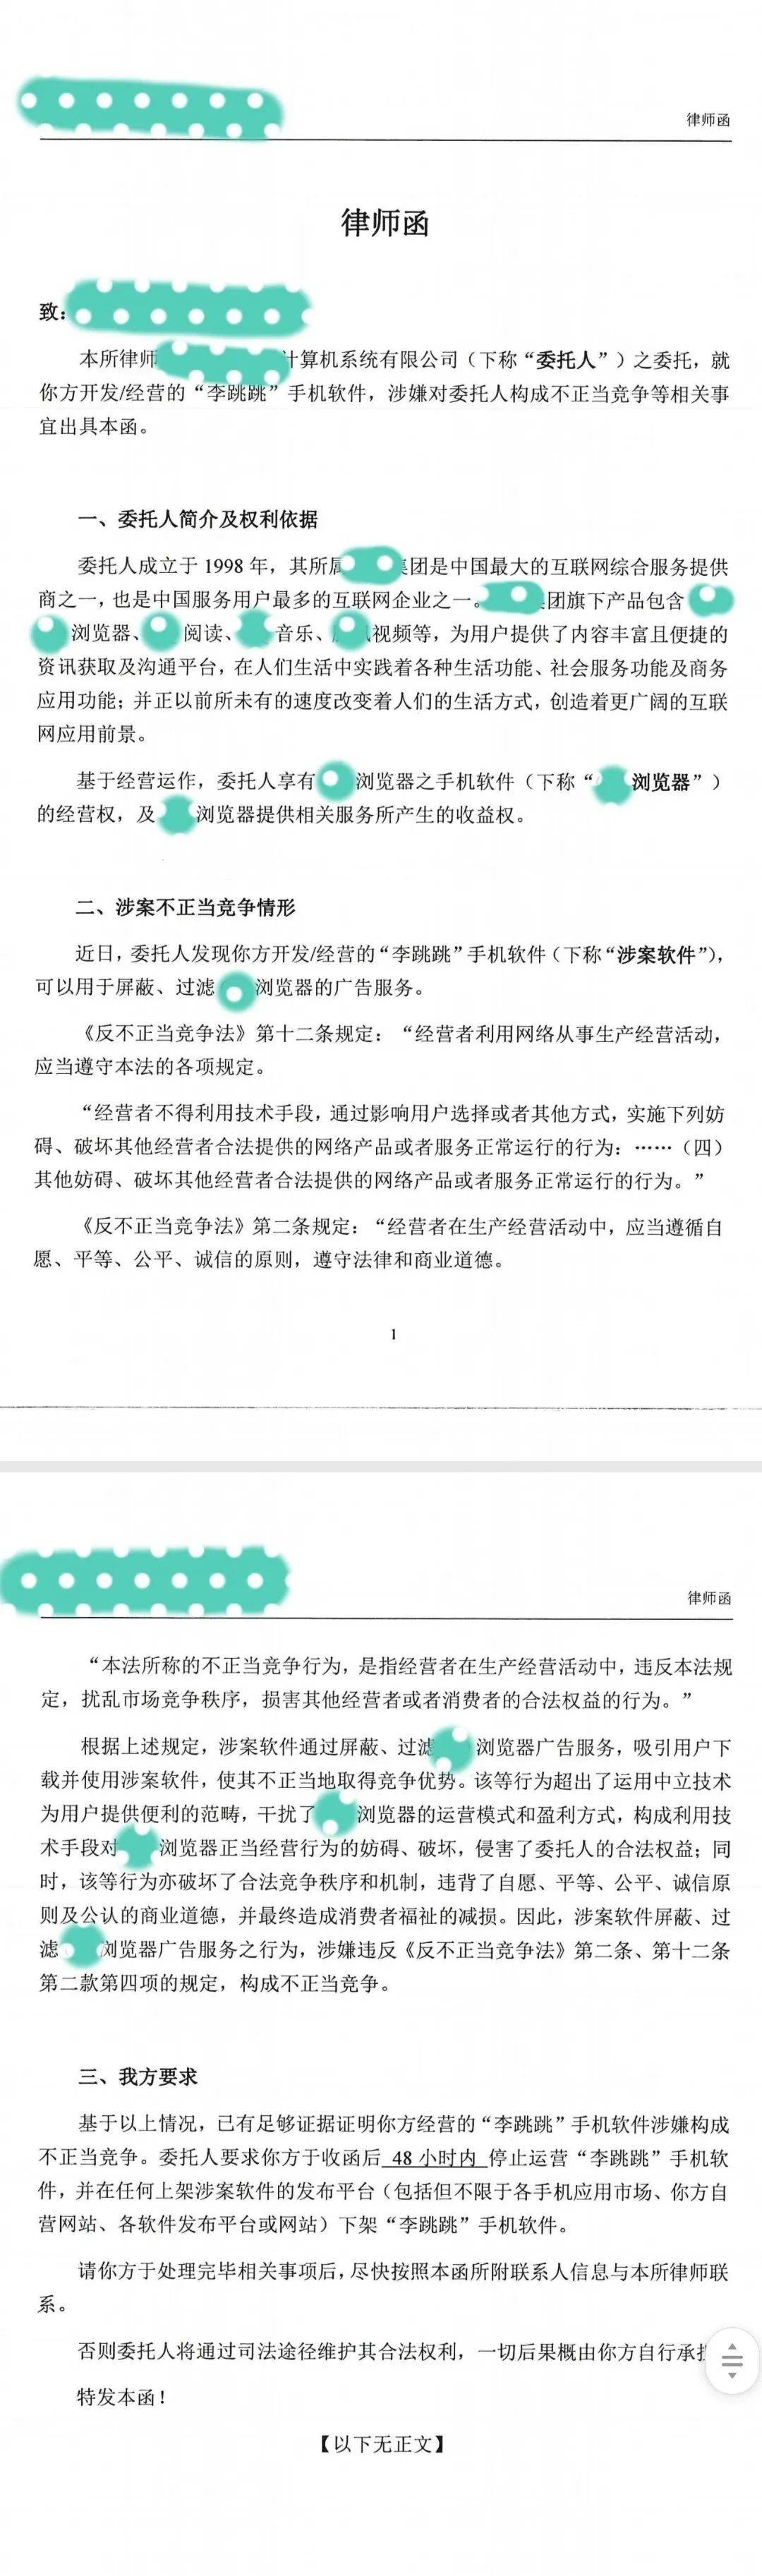 知名软件“李跳跳”因涉嫌侵权被告，宣布无限期停止更新插图-zyq.today